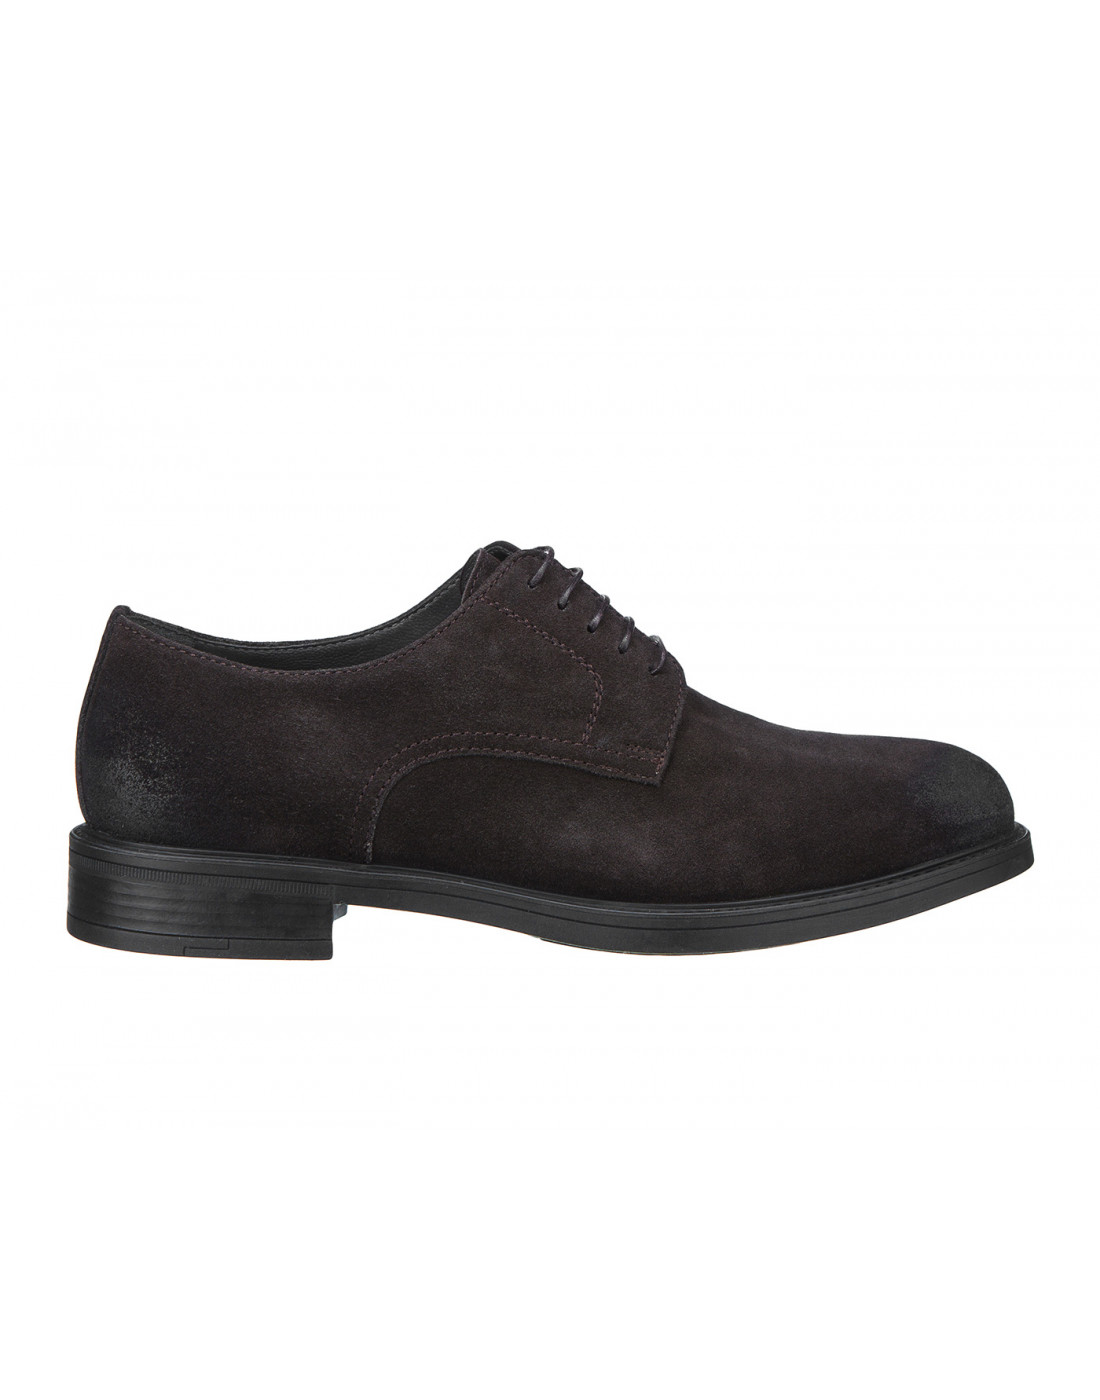 Туфли коричневые мужские Moreschi S42848-1